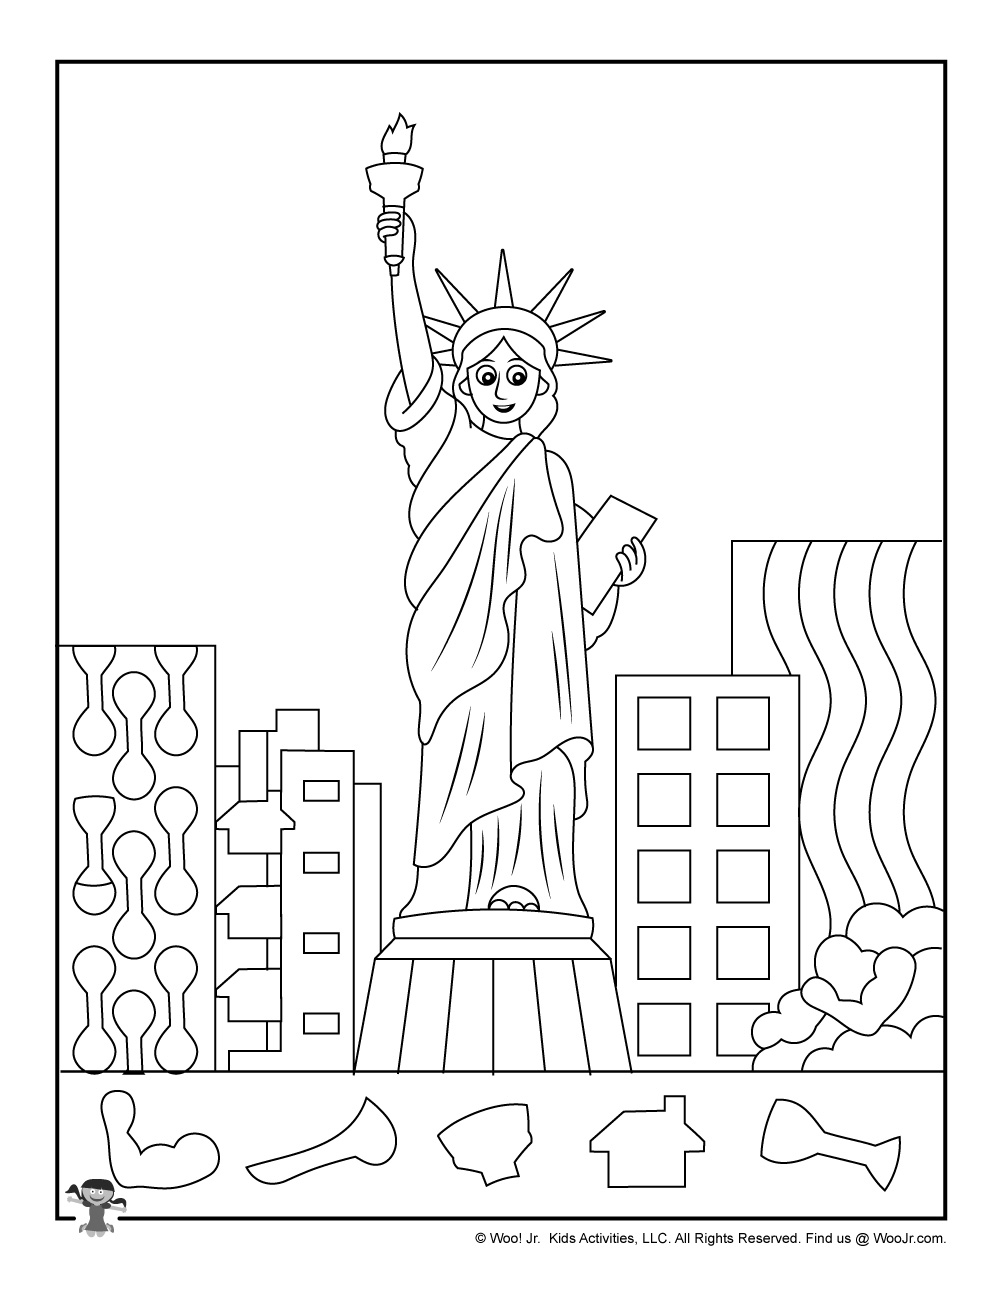 Statue Of Liberty Hidden Object Printable Woo Jr Kids Activities Children s Publishing